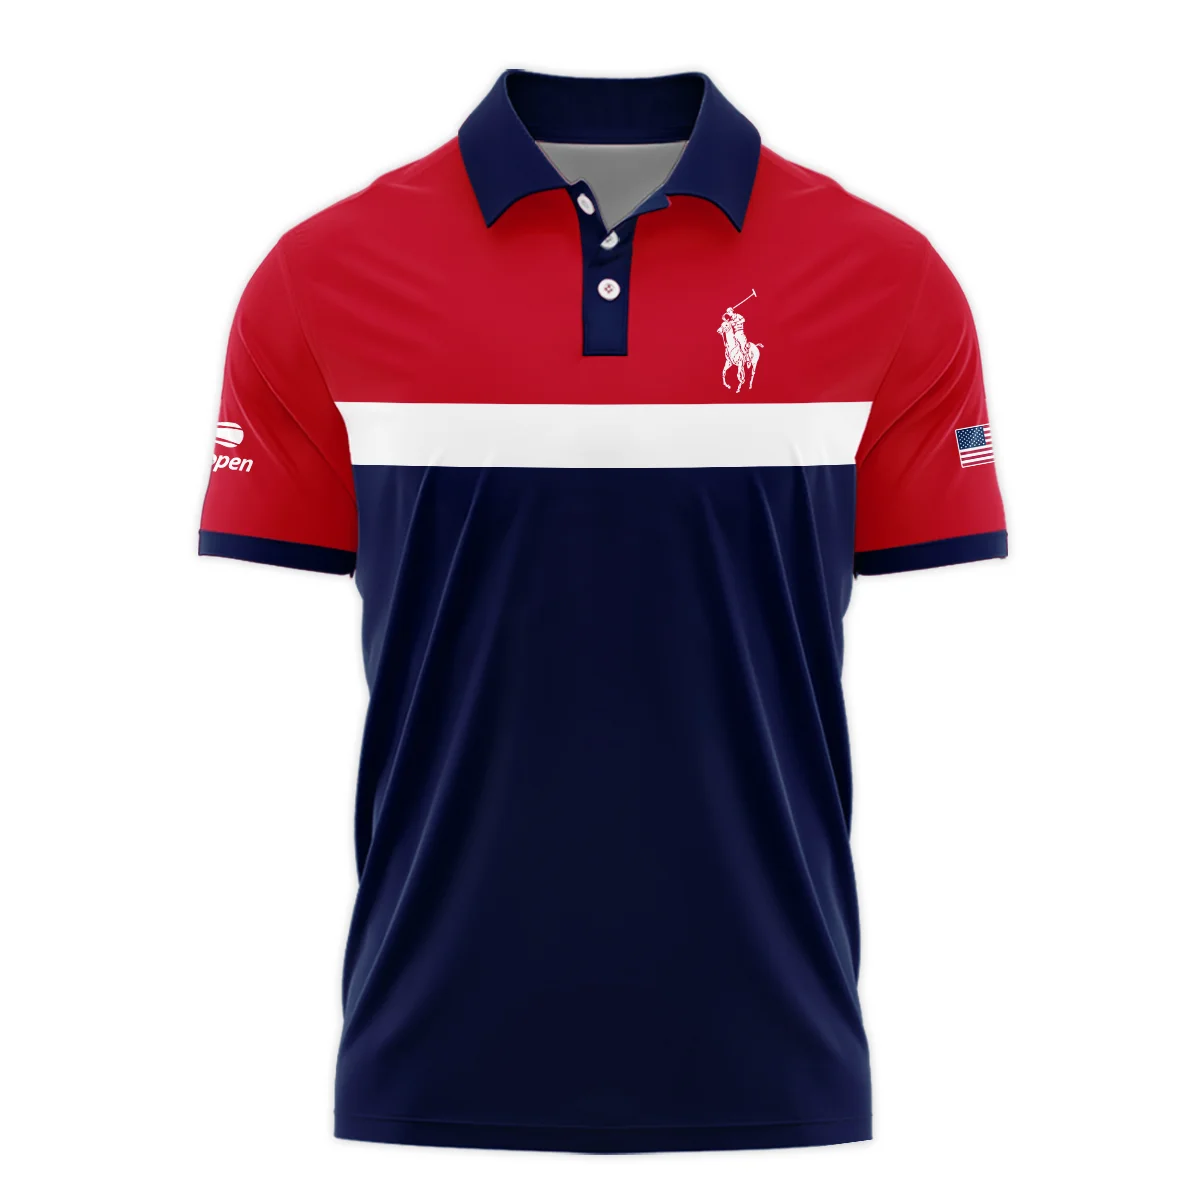 Ralph Lauren Blue Red White Background US Open Tennis Champions Mandarin collar Quater-Zip Long Sleeve